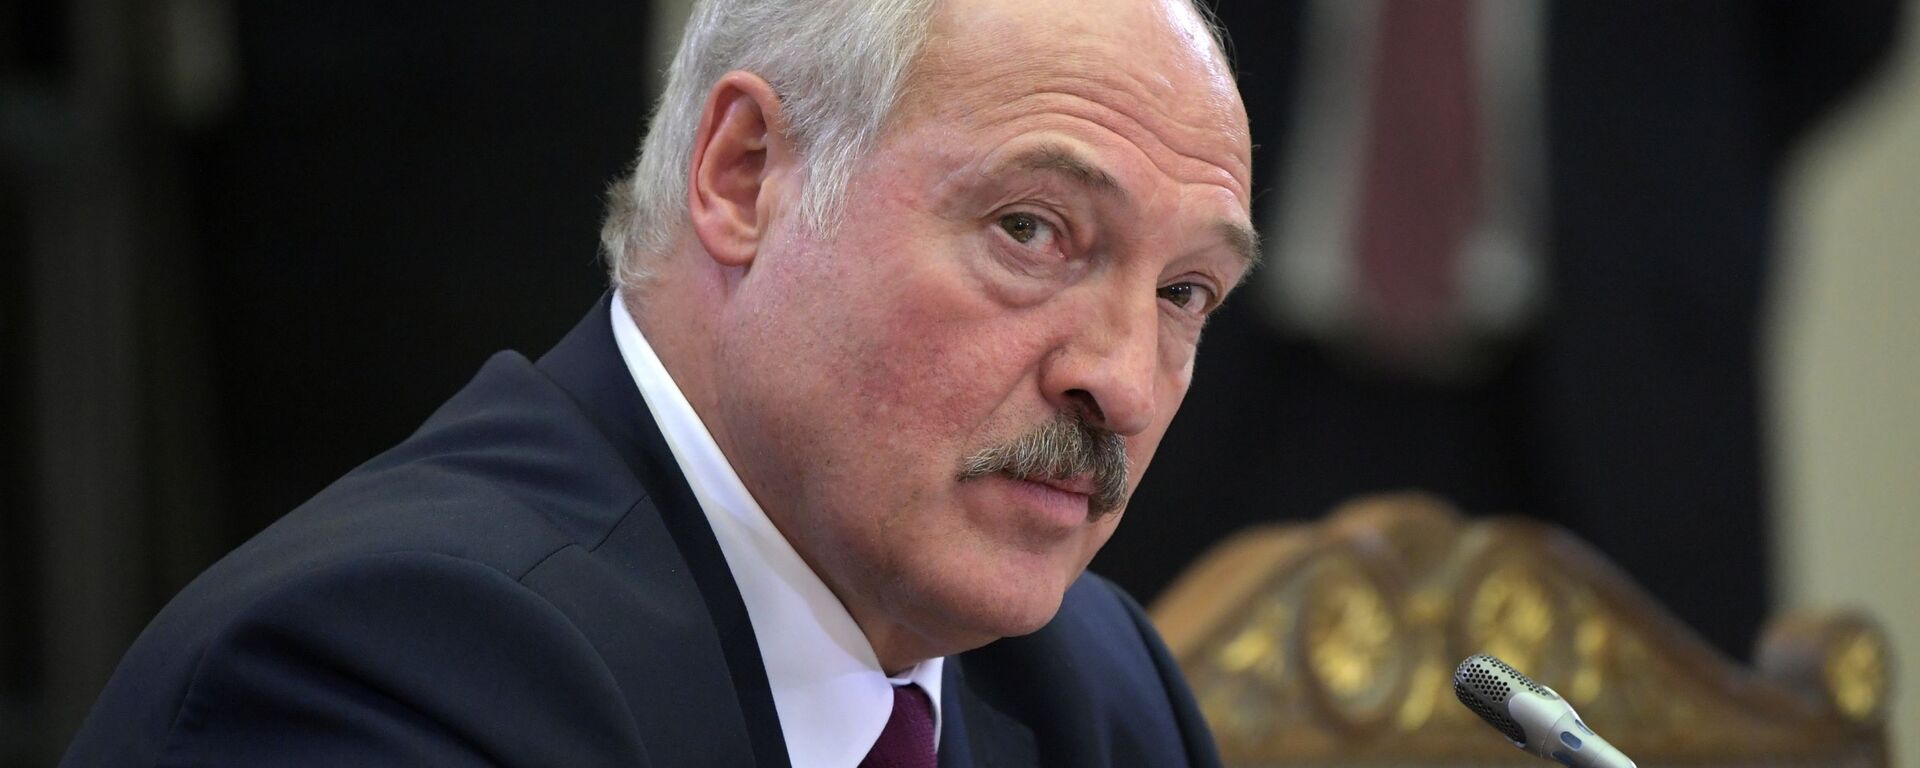 Президент Беларуси Александр Лукашенко - Sputnik Латвия, 1920, 24.05.2021